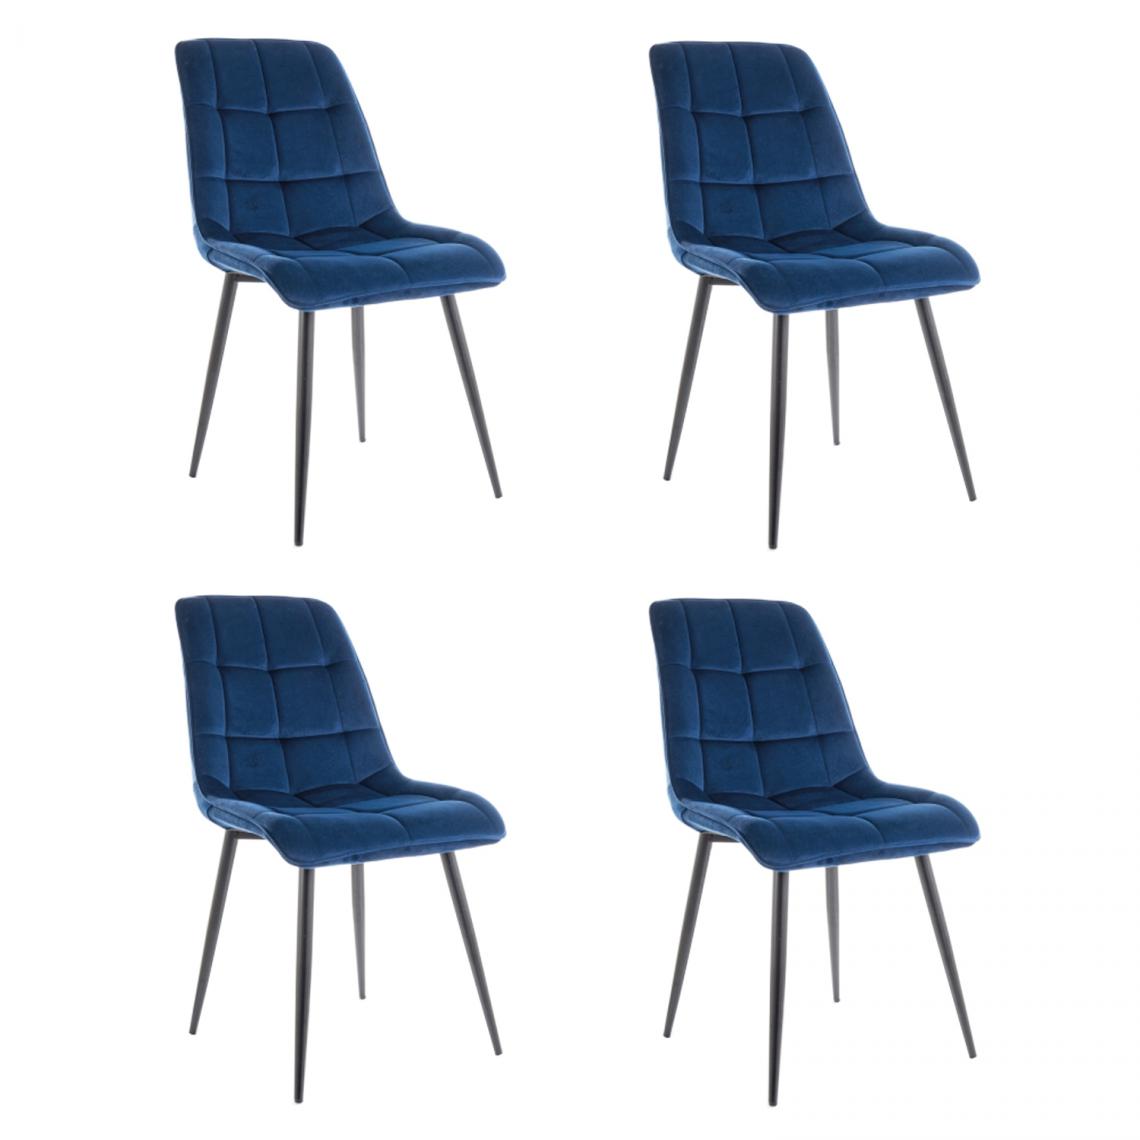 Hucoco - CHIM - Lot de 4 chaises matelassées salle à manger - 89x51x44 cm - Tissu velouté - Pieds en métal - Blue - Chaises